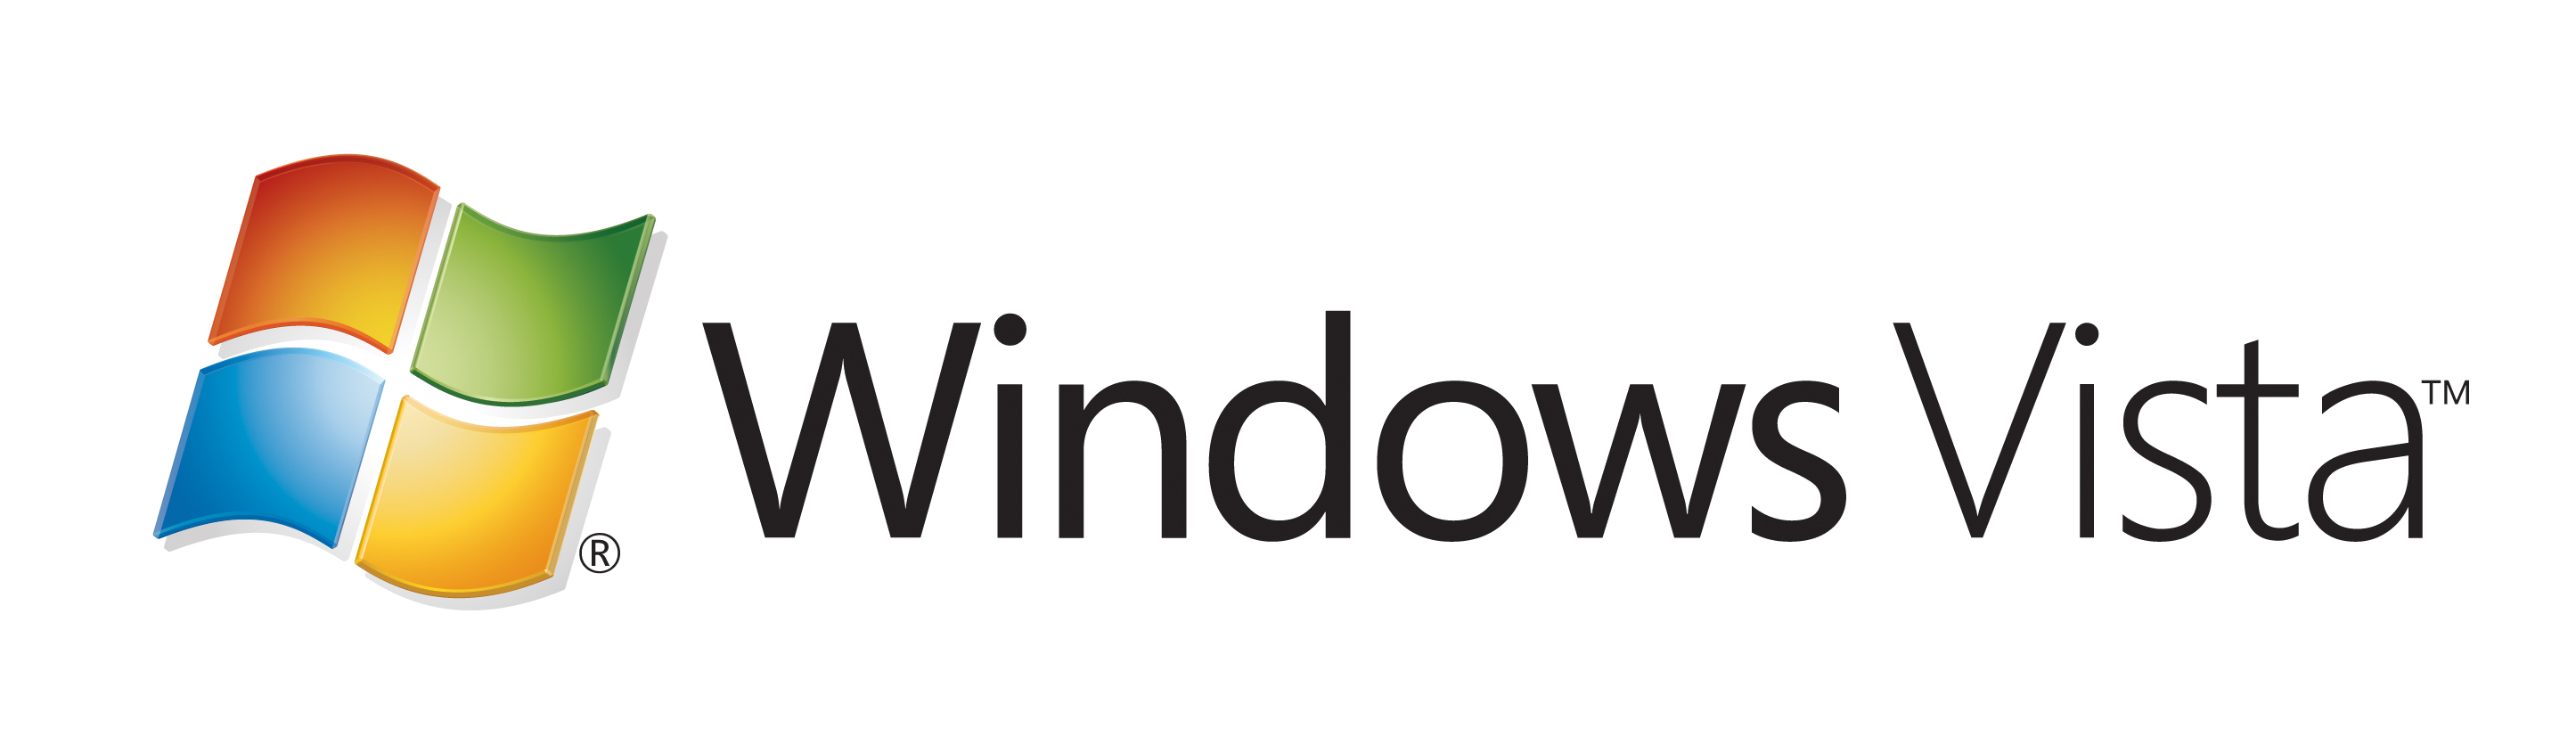 Microsoft Store (retail) - Wikipedia